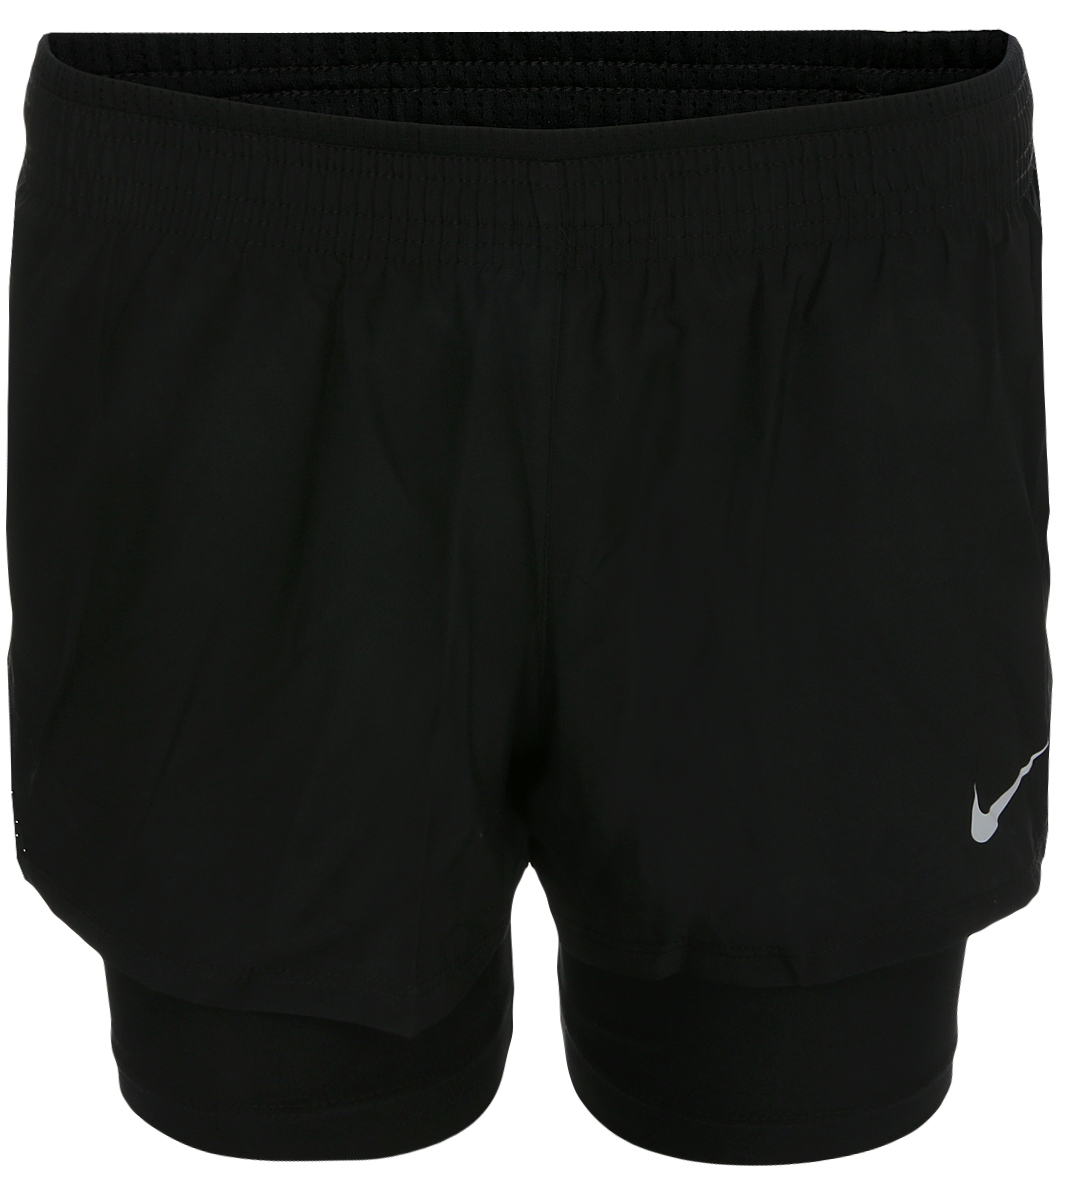 Шорты женские Nike 10k 2-in-1 Running Shorts, цвет: черный. 902283-010. Размер XS (40/42)